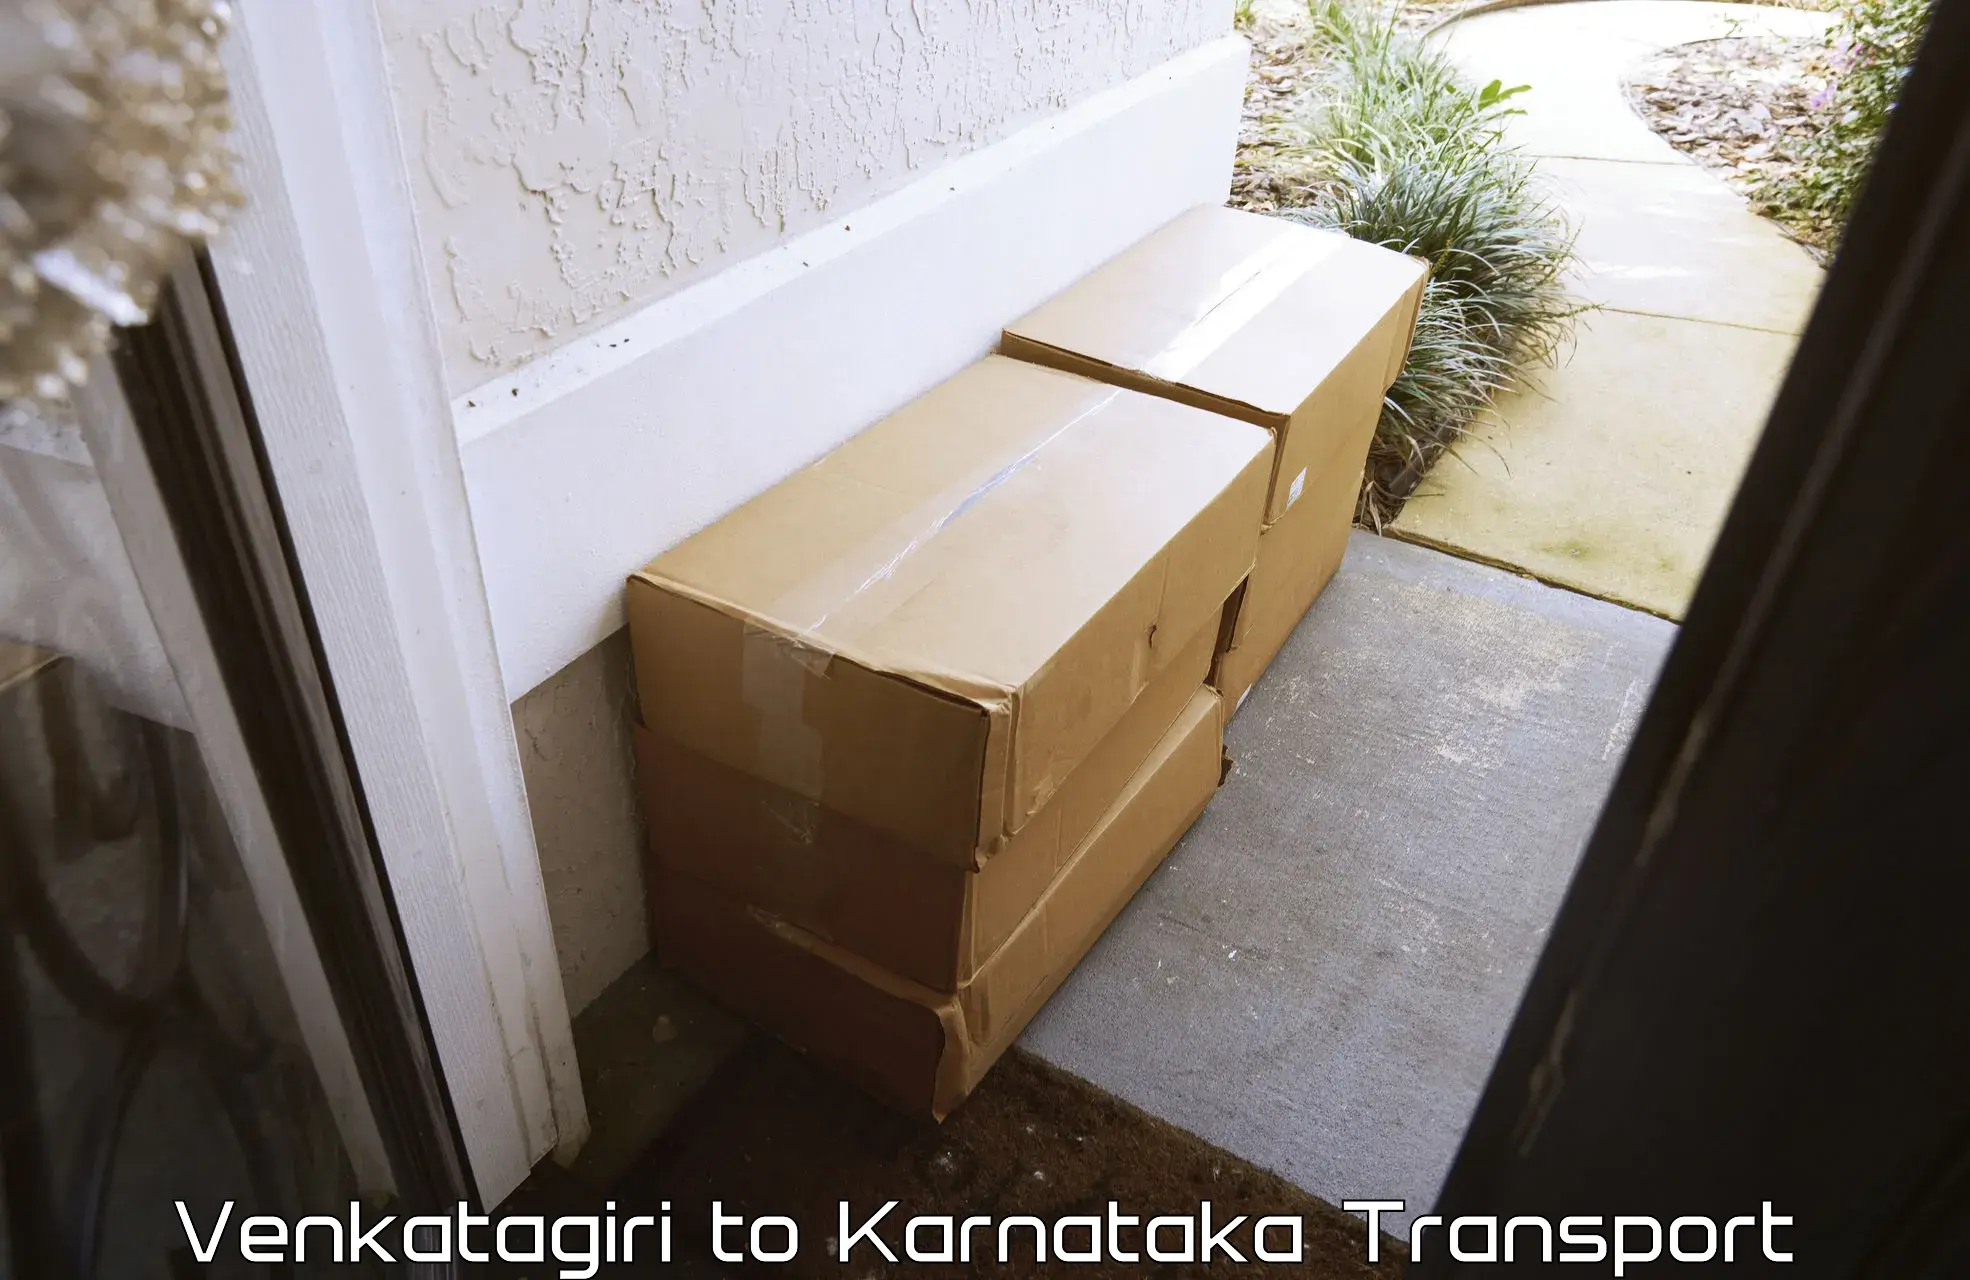 Goods delivery service Venkatagiri to Chikkanayakanahalli